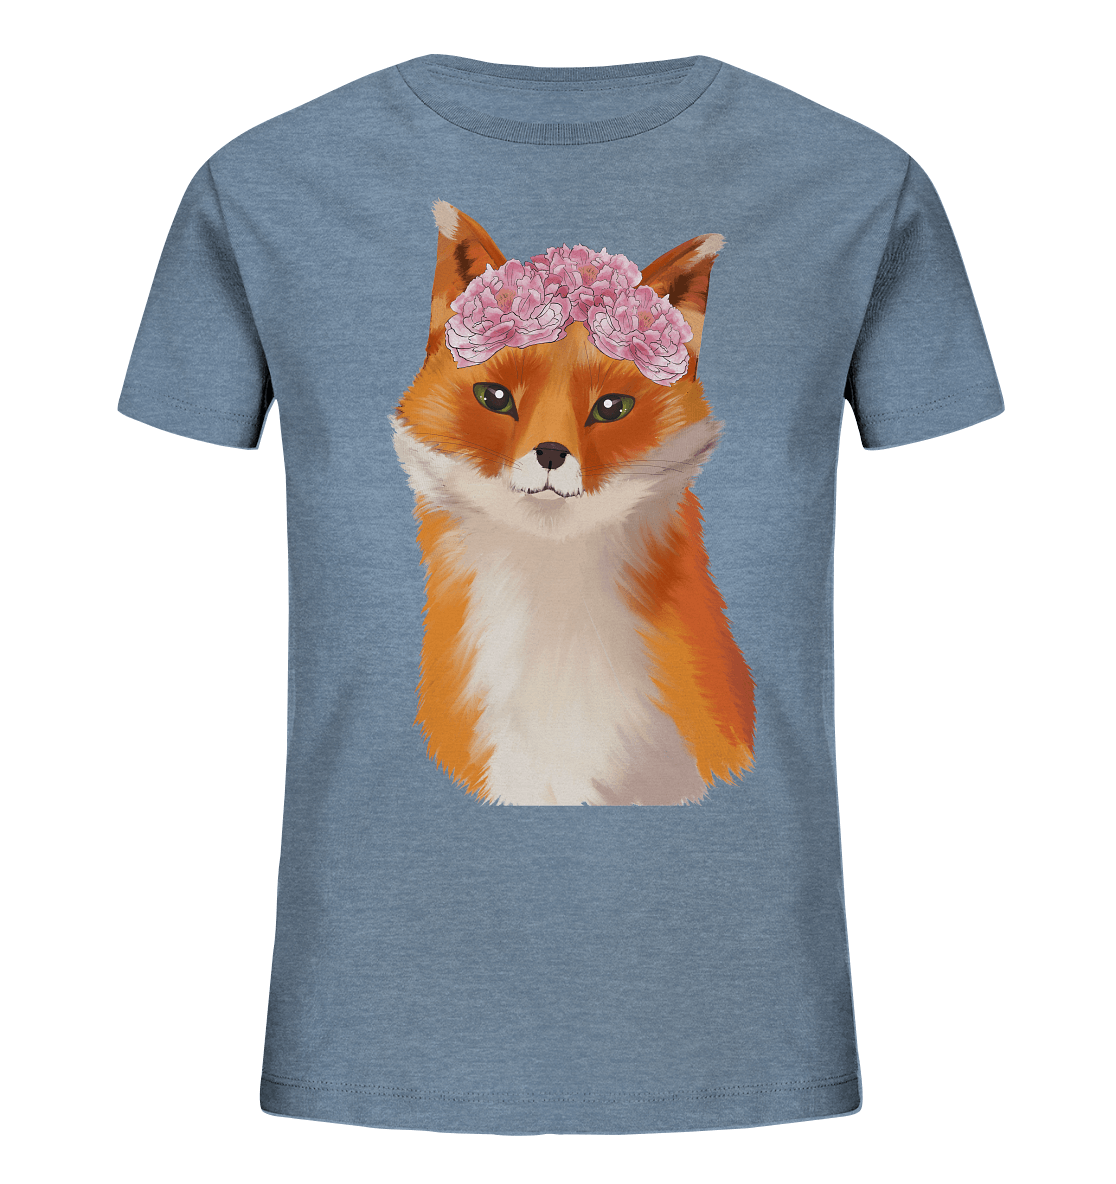 Fuchs Kinder T-Shirt "Fuchs mit Blumen" in blau